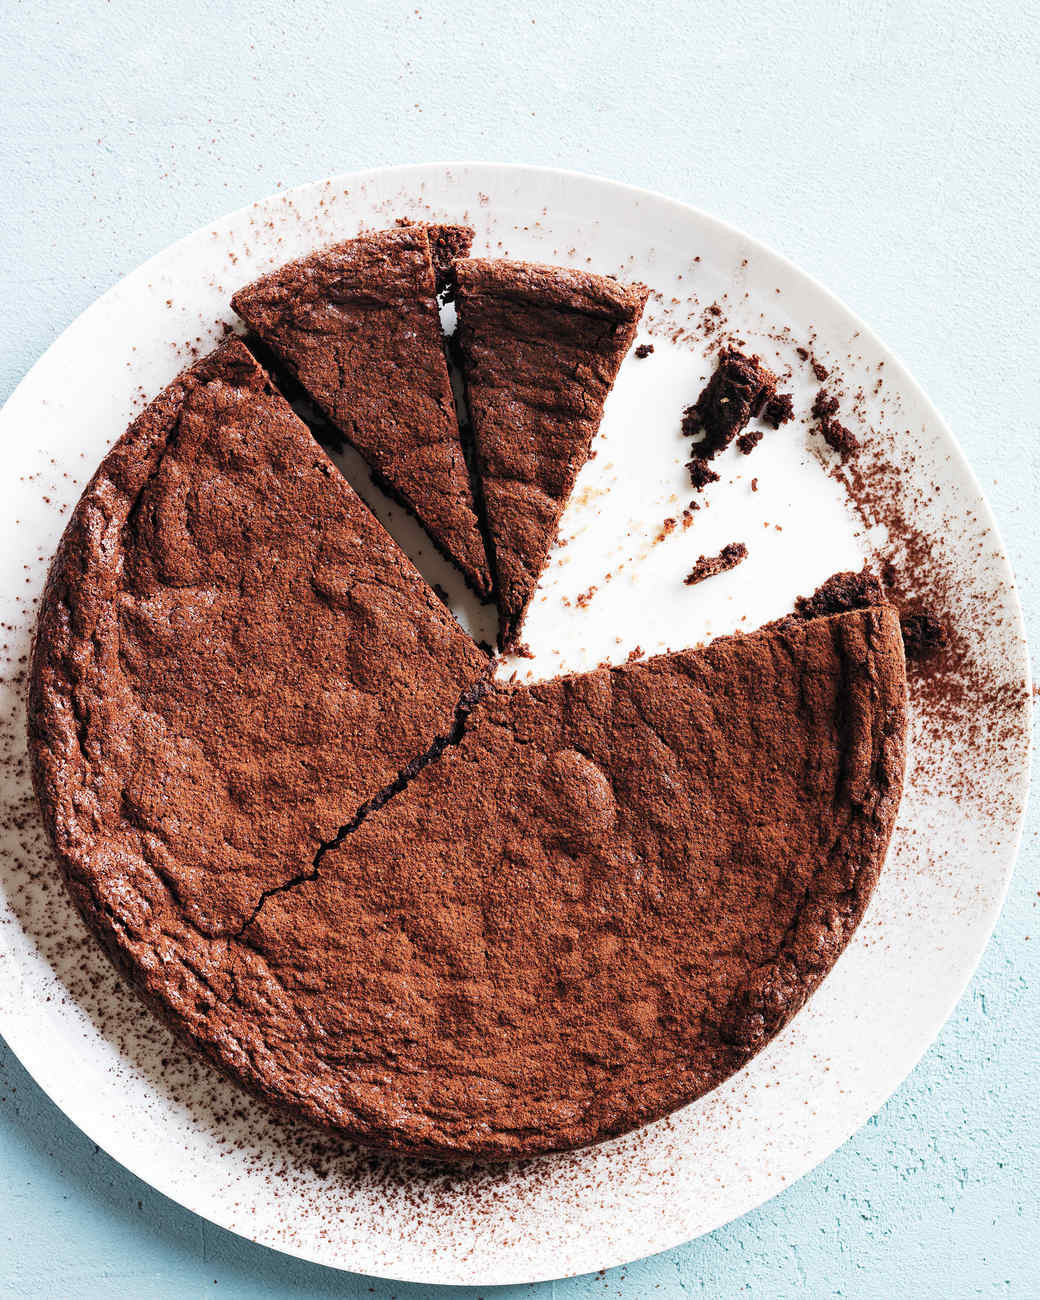 Martha Stewart Chocolate Cake New Best Chocolate Cake Recipes Of Martha Stewart Chocolate Cake 